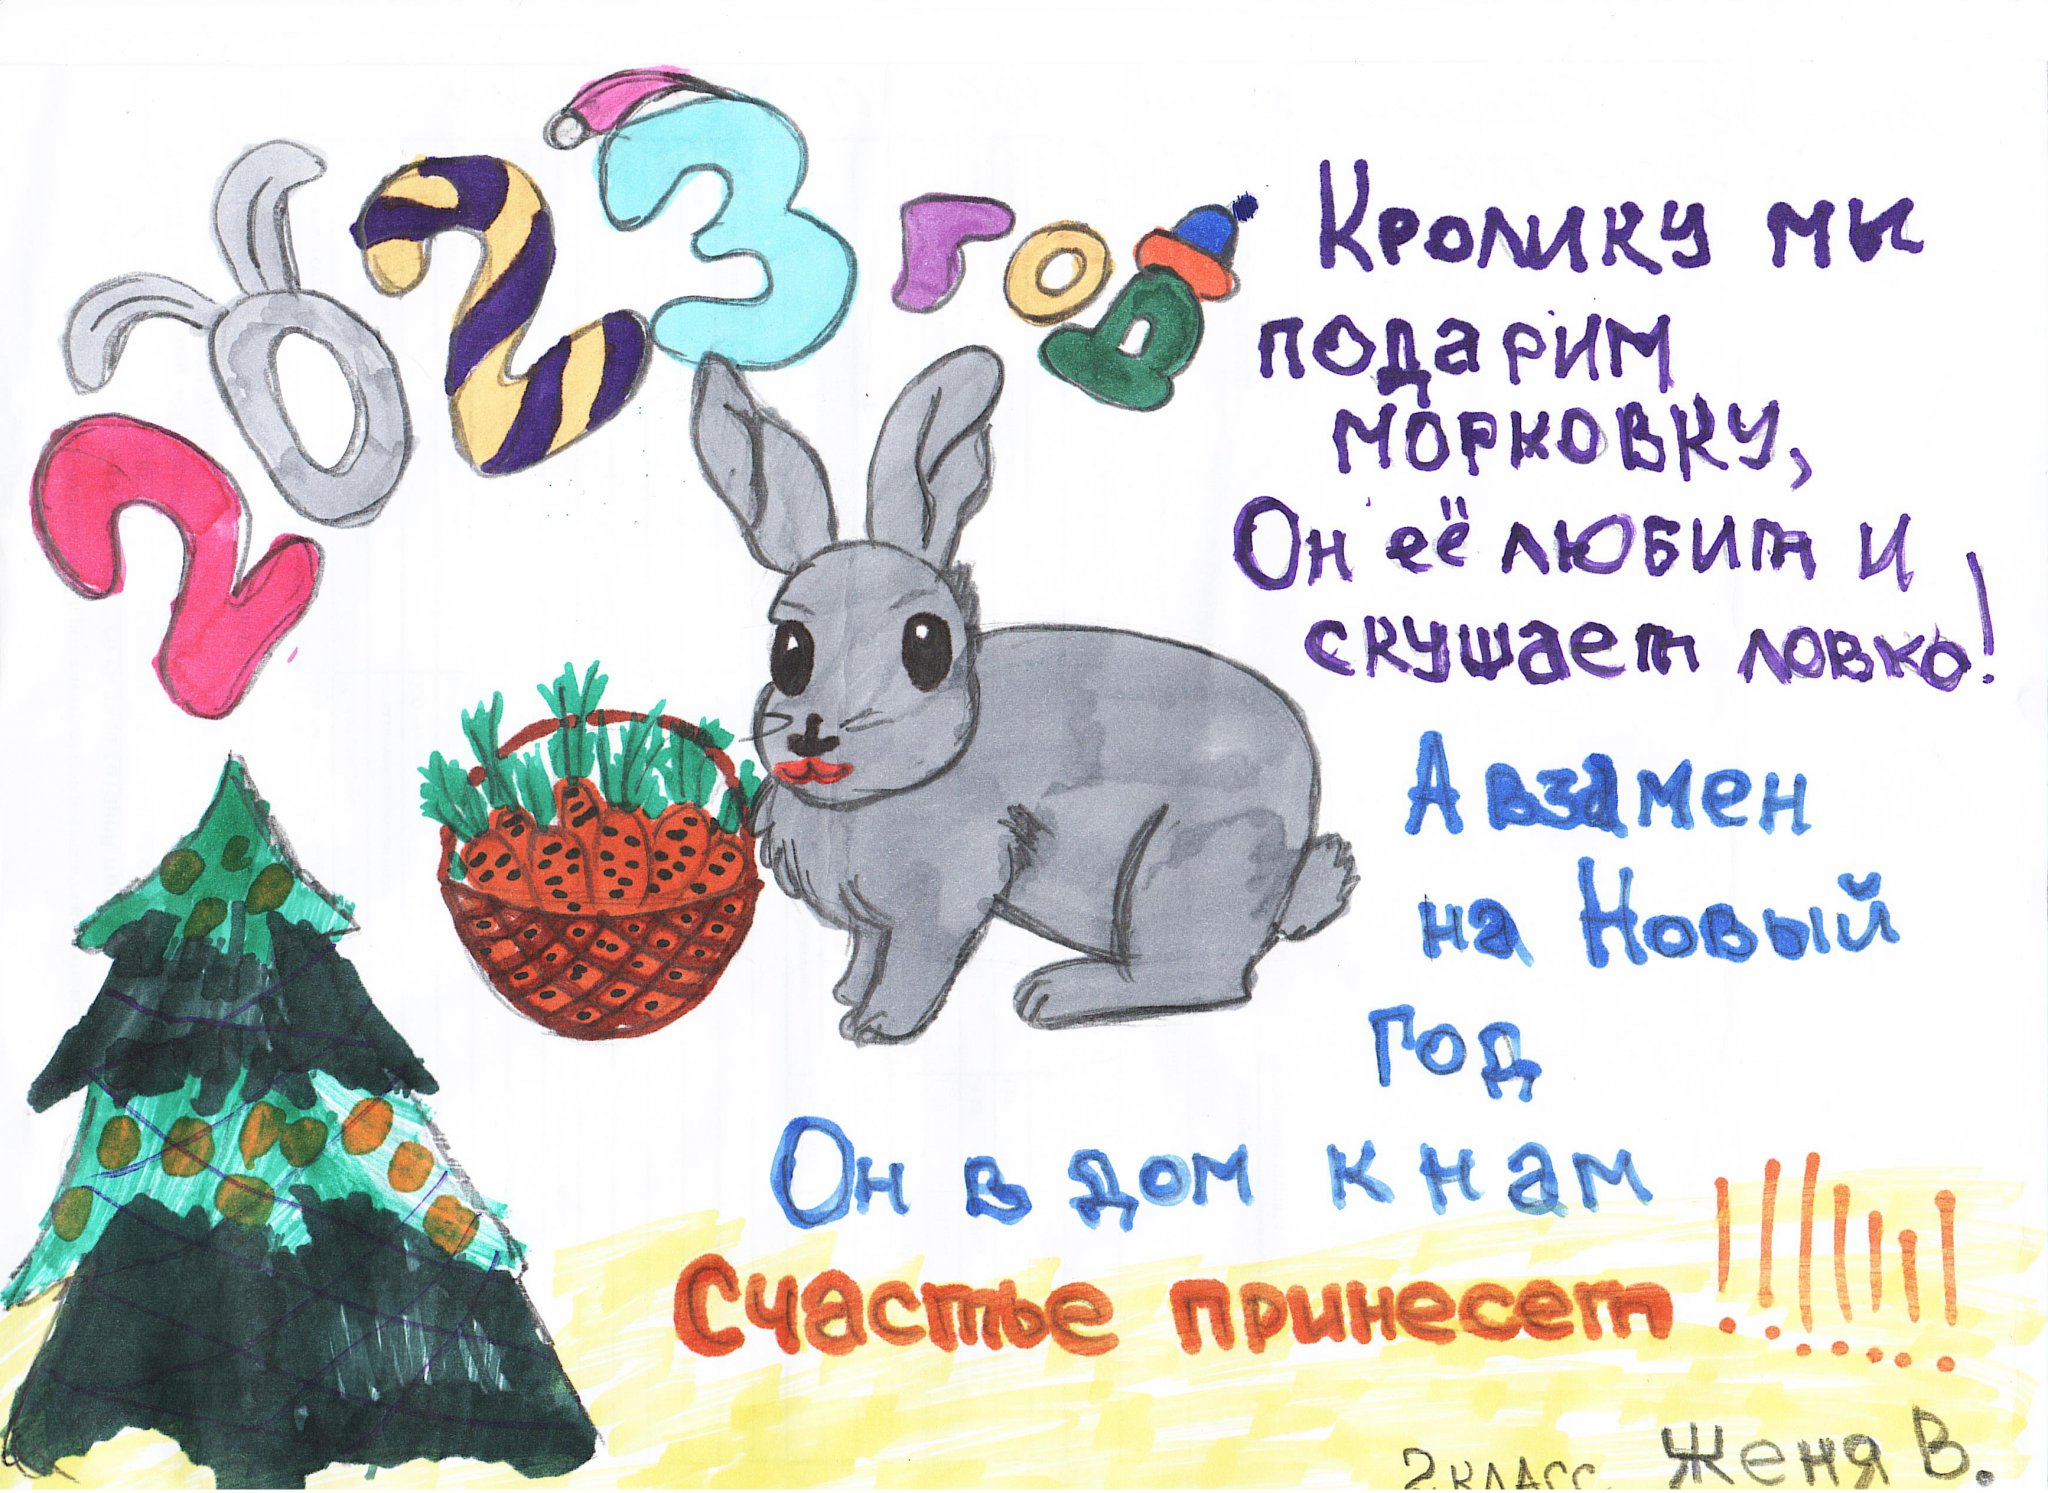 Год кролика хороший. Год кролика. Плакат к новому году год кролика. Плакат на НГ С кроликом. Плакат к НГ кролика рисунок.